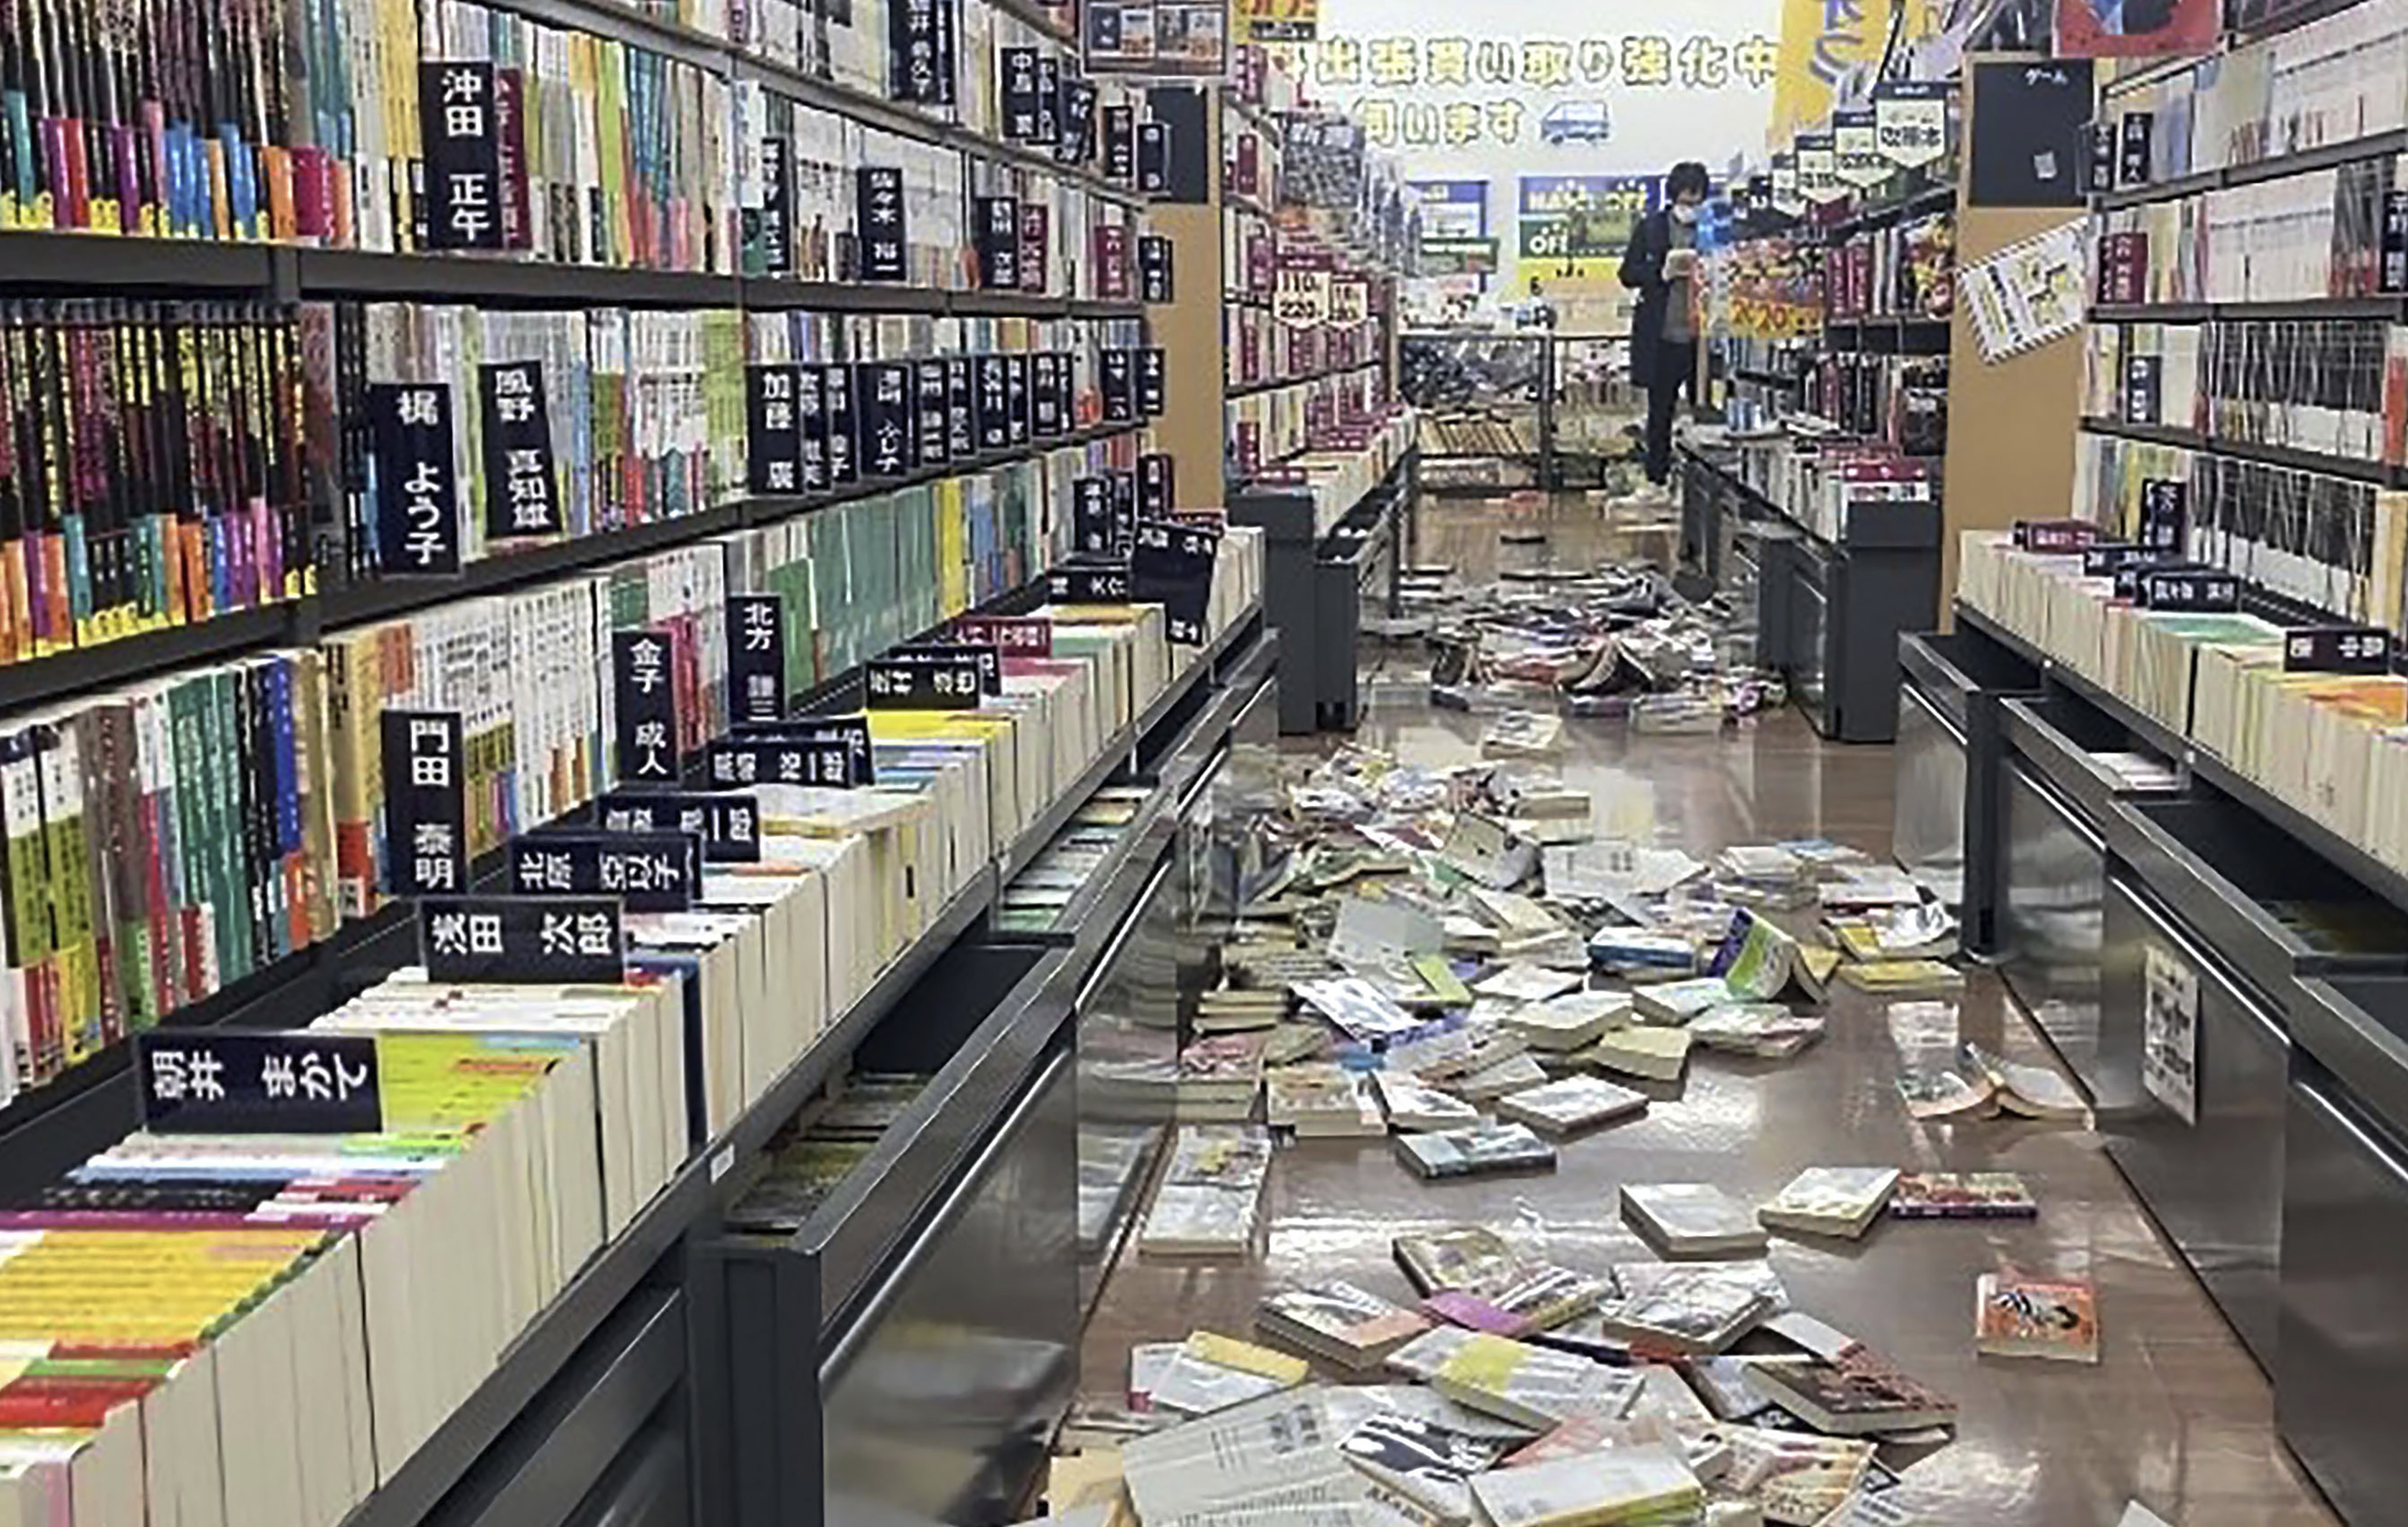 پیر کو آنے والے زلزلے کے بعد جاپان کے نیگاتا میں کتابوں کی دکان پر کتابیں بکھری ہوئی ہیں (PHOTO:AP)